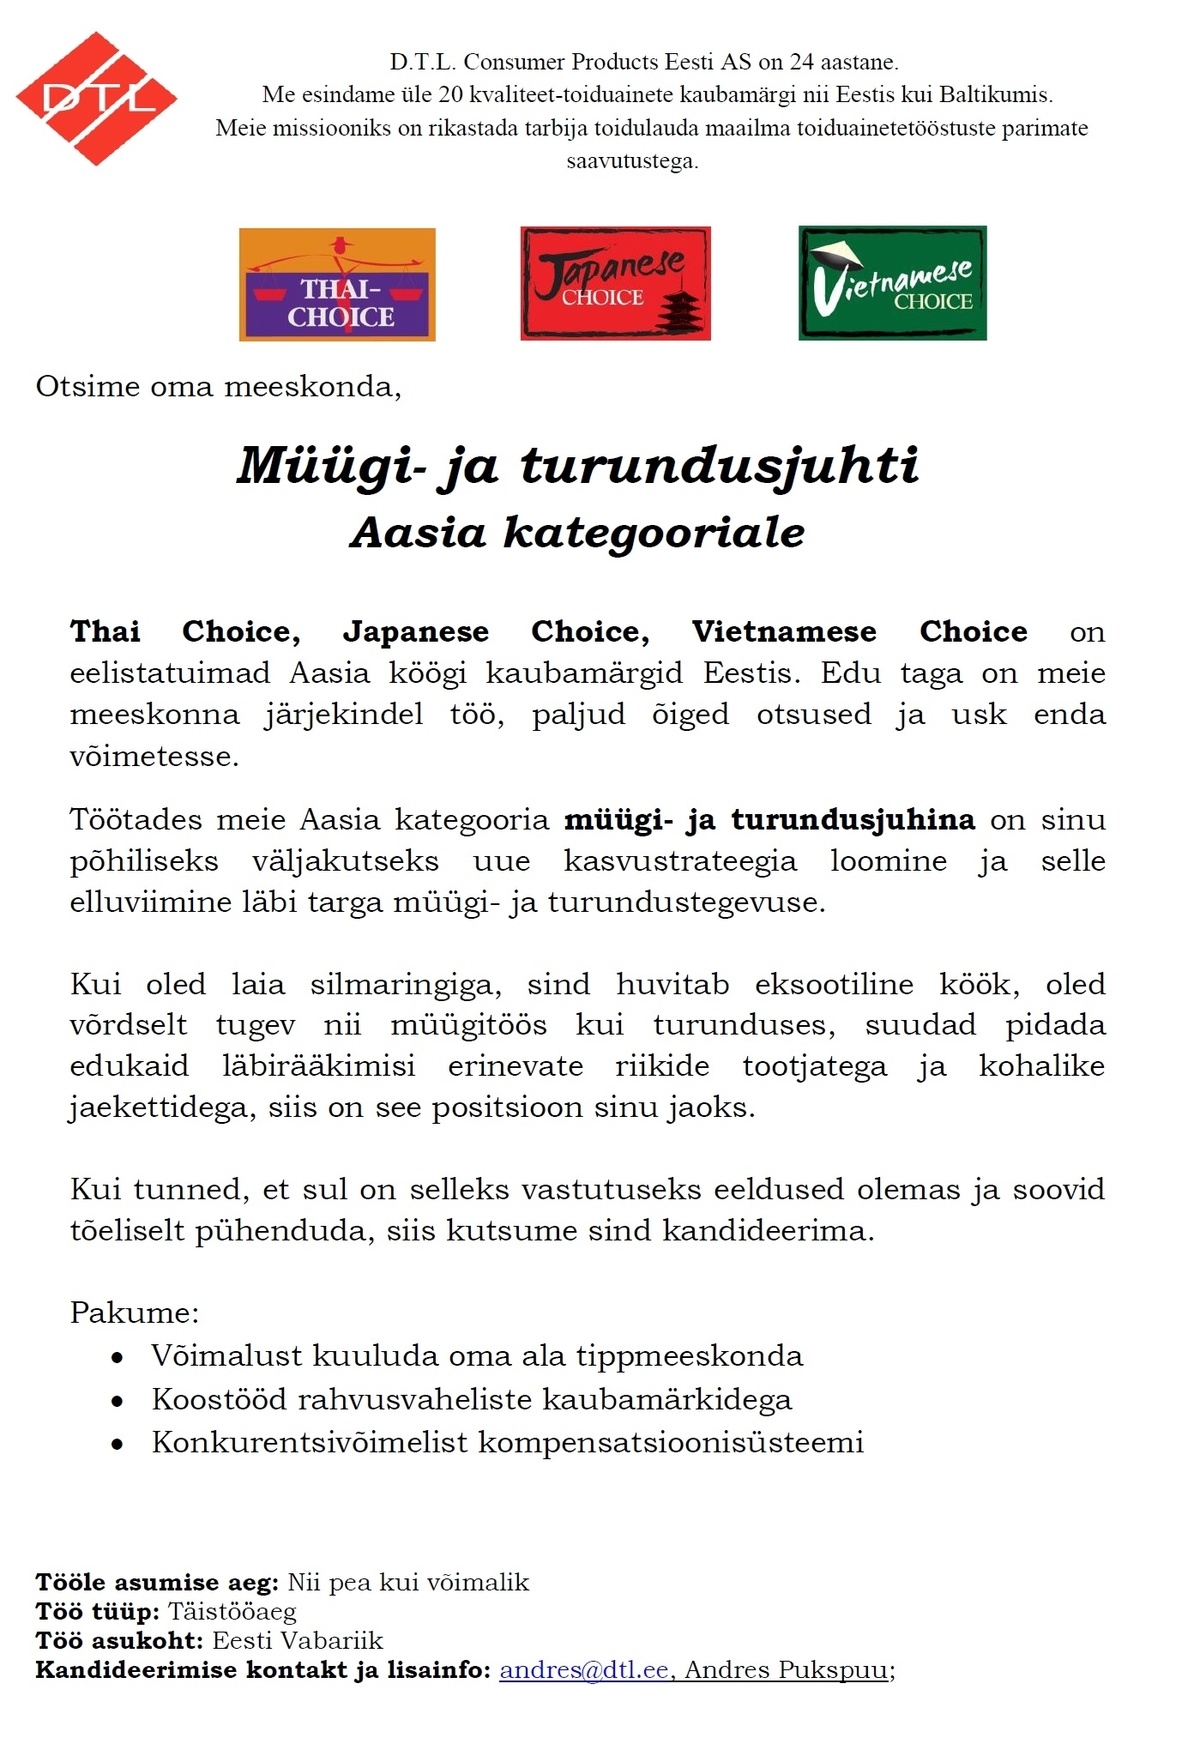 D.T.L. Consumer Products Eesti AS Müügi- ja turundusjuhti Aasia kategooriale